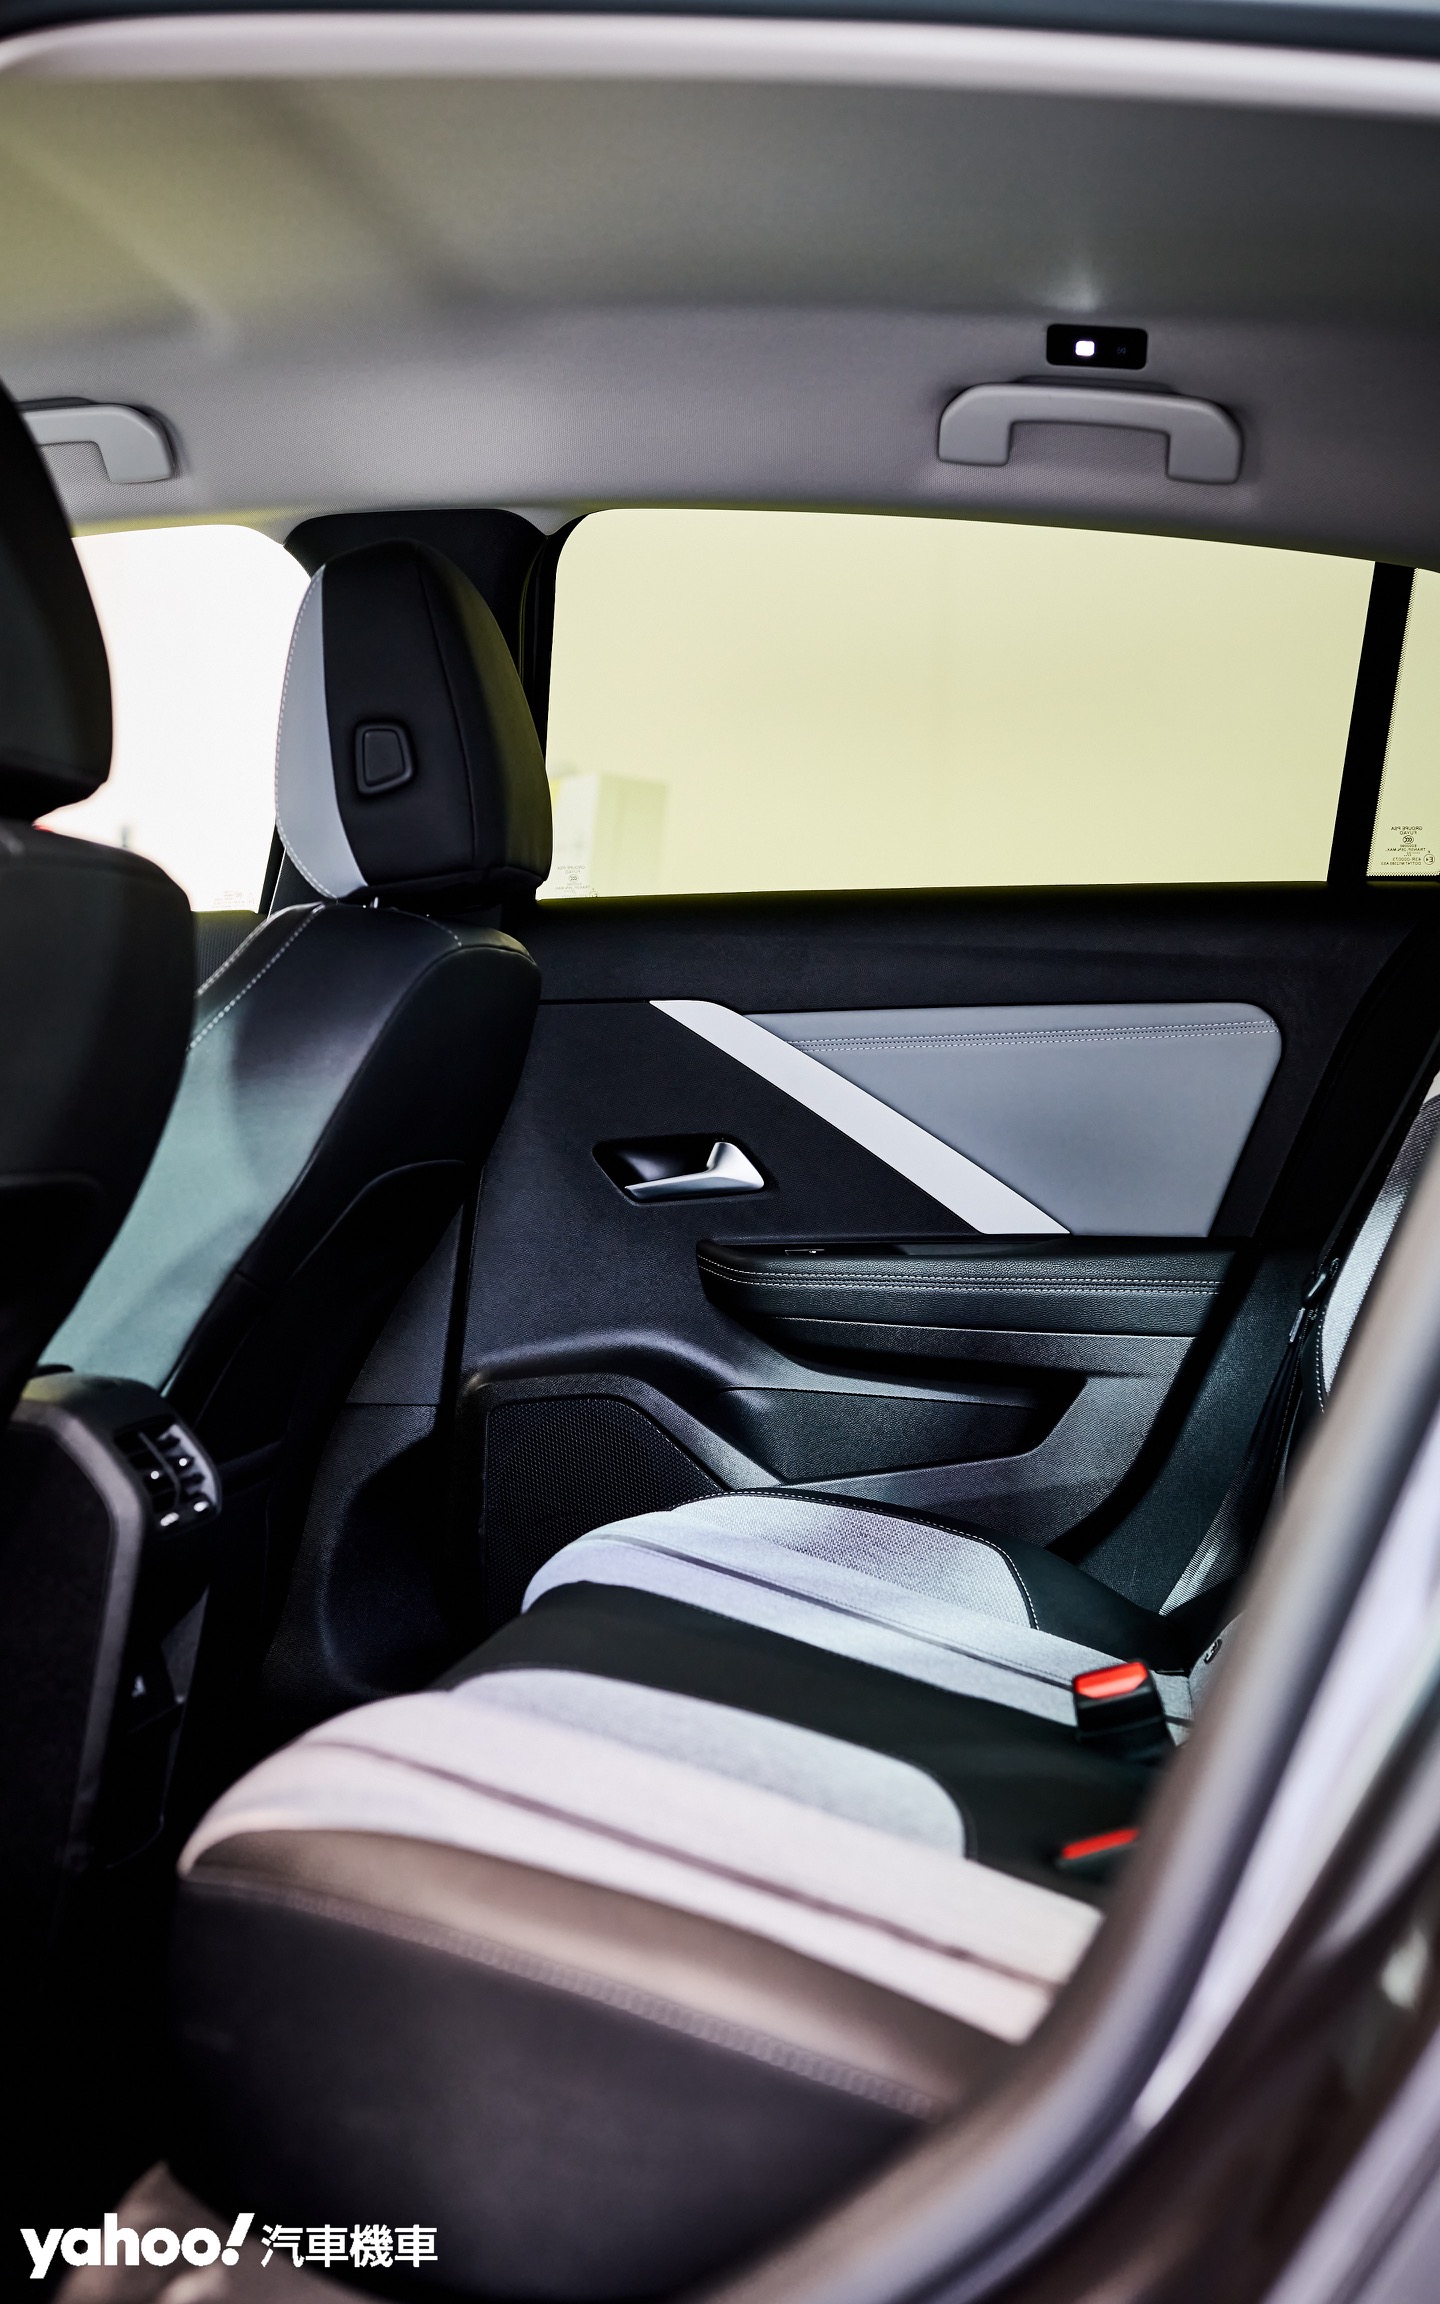 Astra更長的車長與軸距換取了更好的後排座椅開闊度及舒適性。